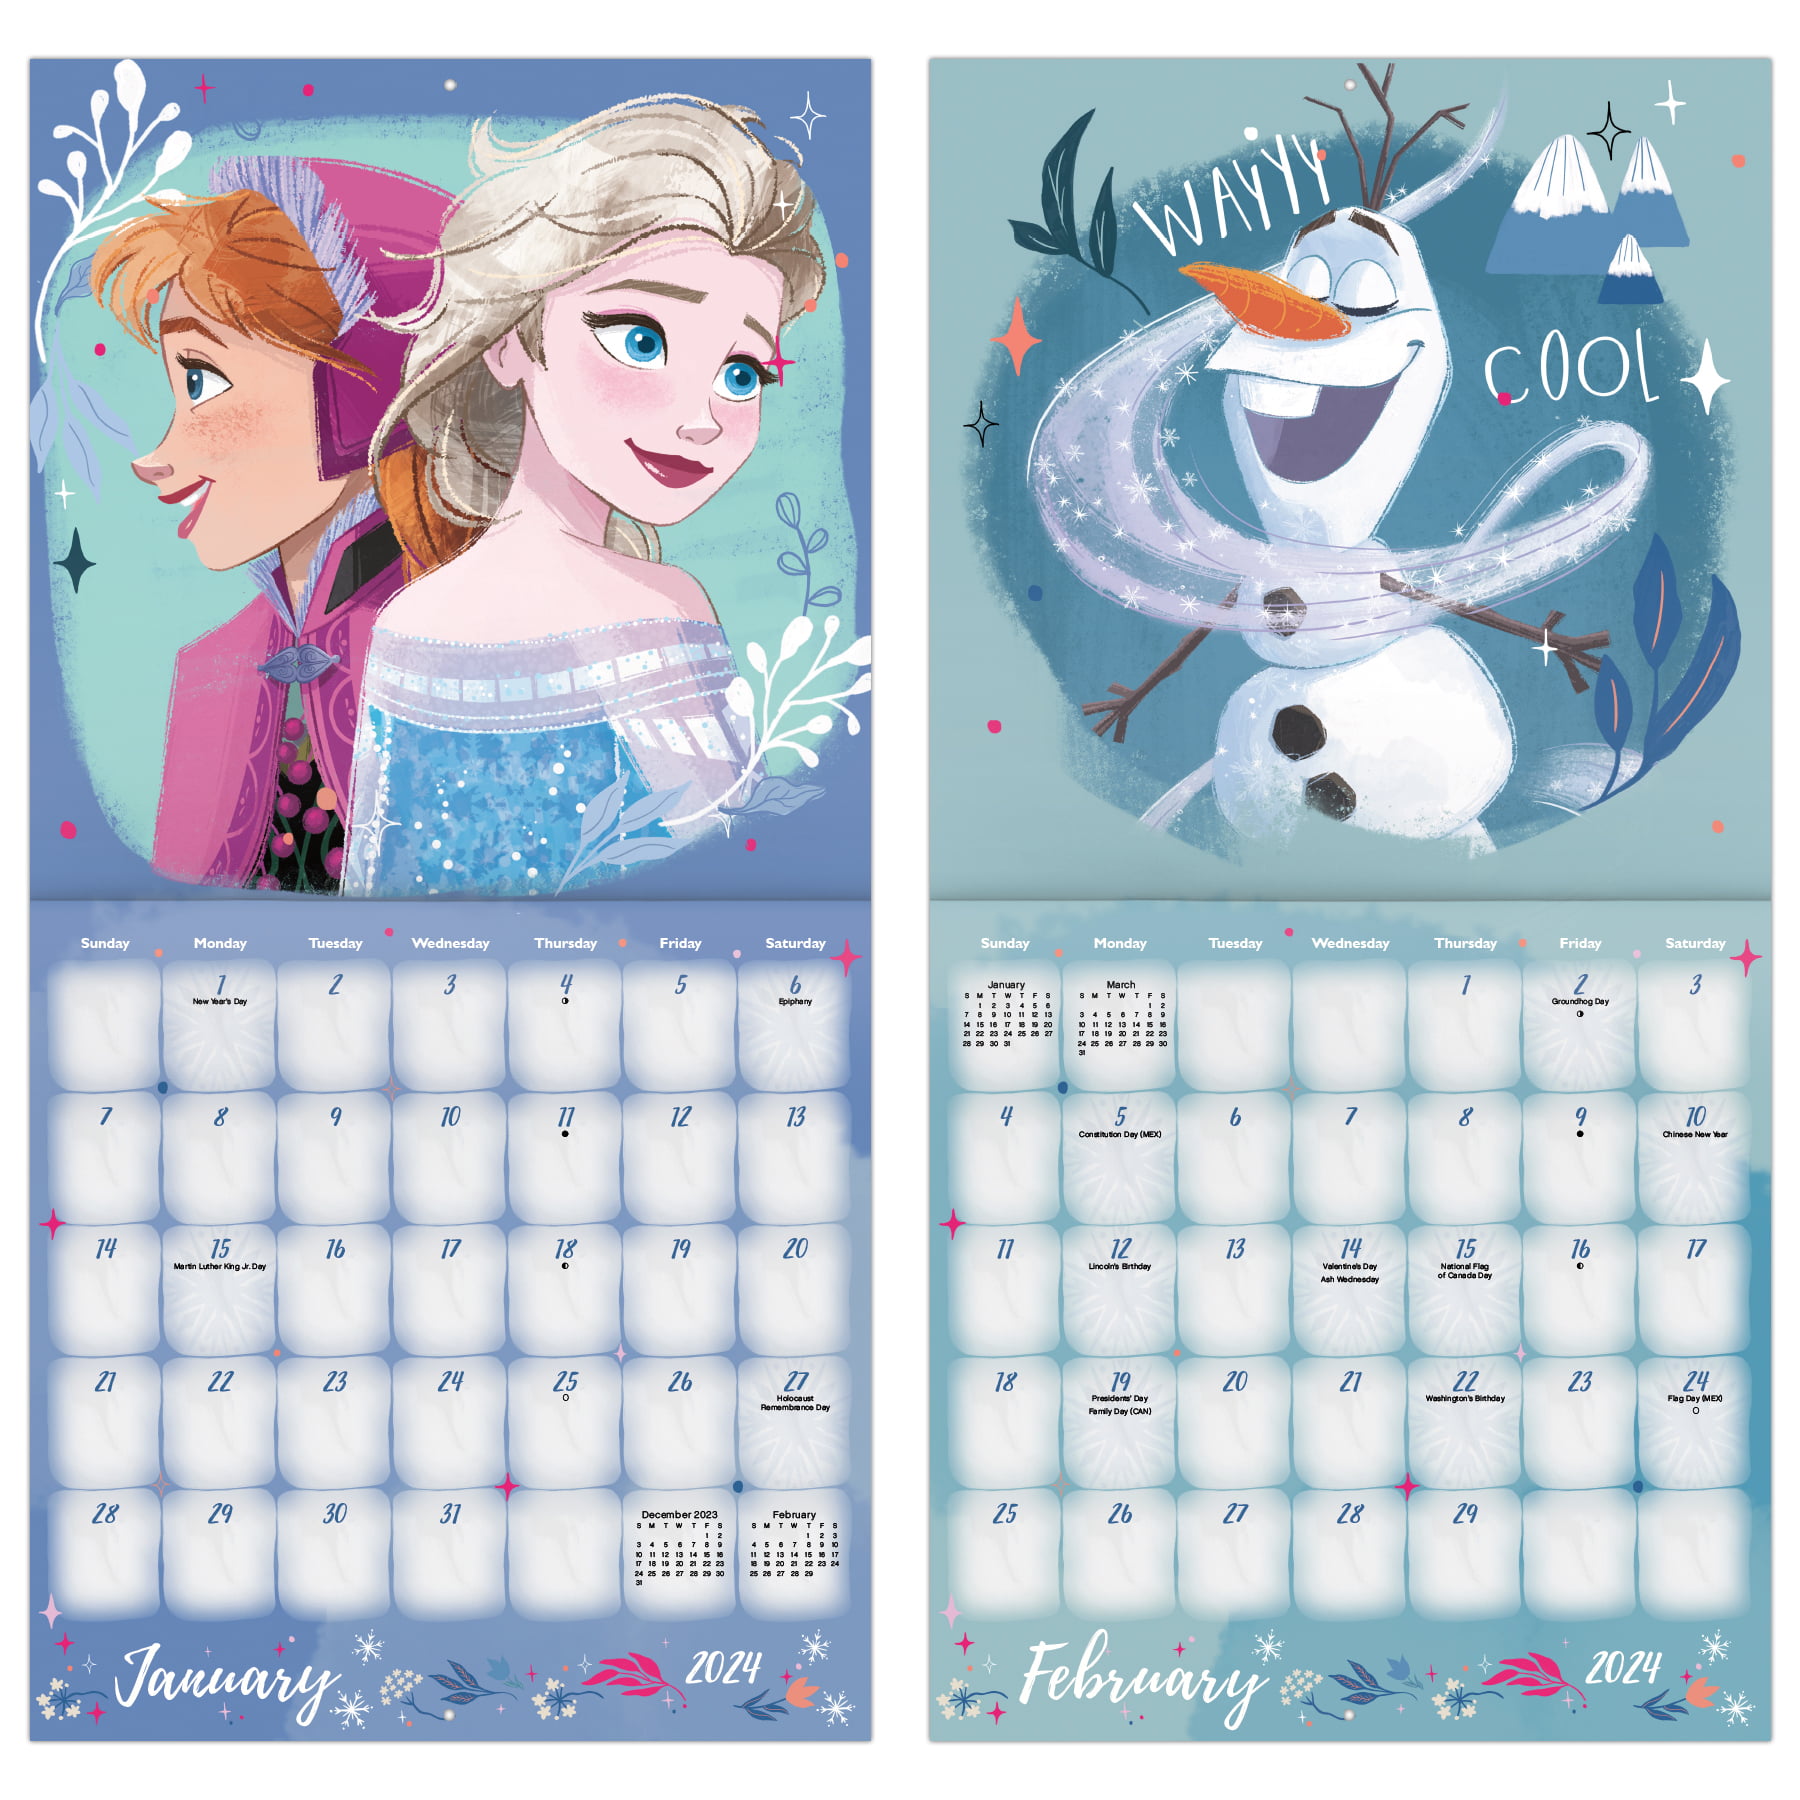 Trends International Inc. 2023-24 Wall Calendar 12x12 Disney Frozen